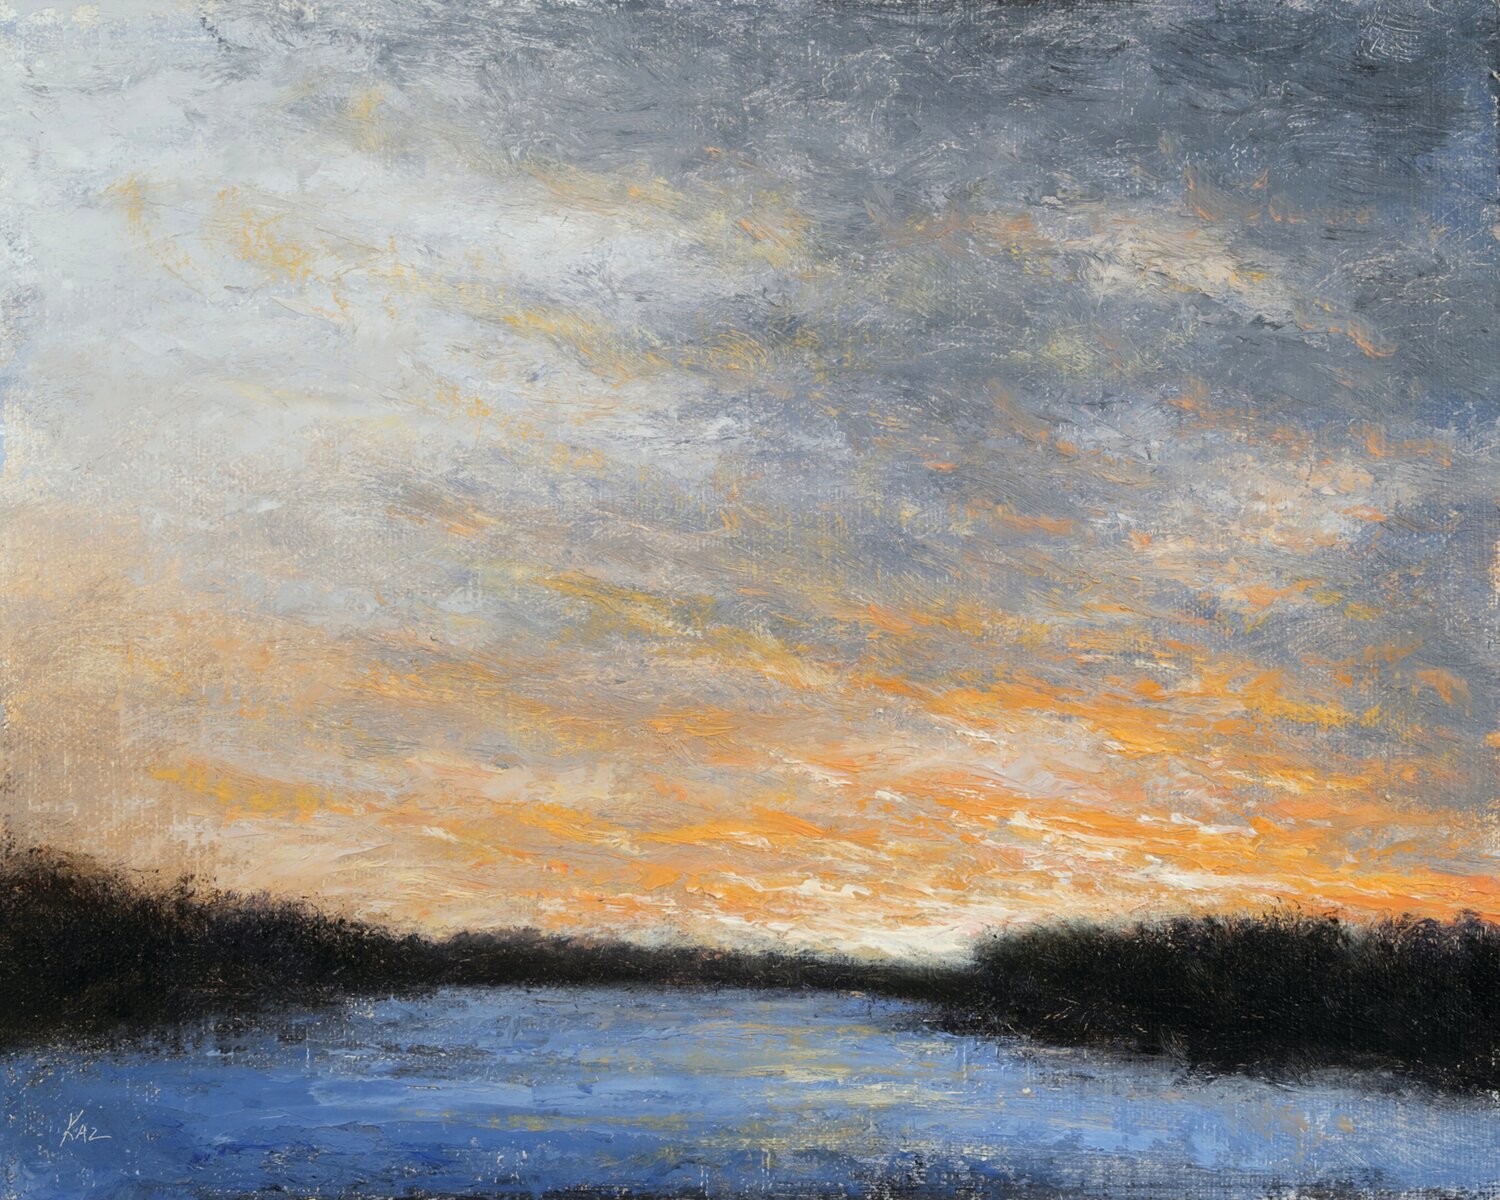 “Winter Sky” is an oil on linen by Joe Kazimierczyk.